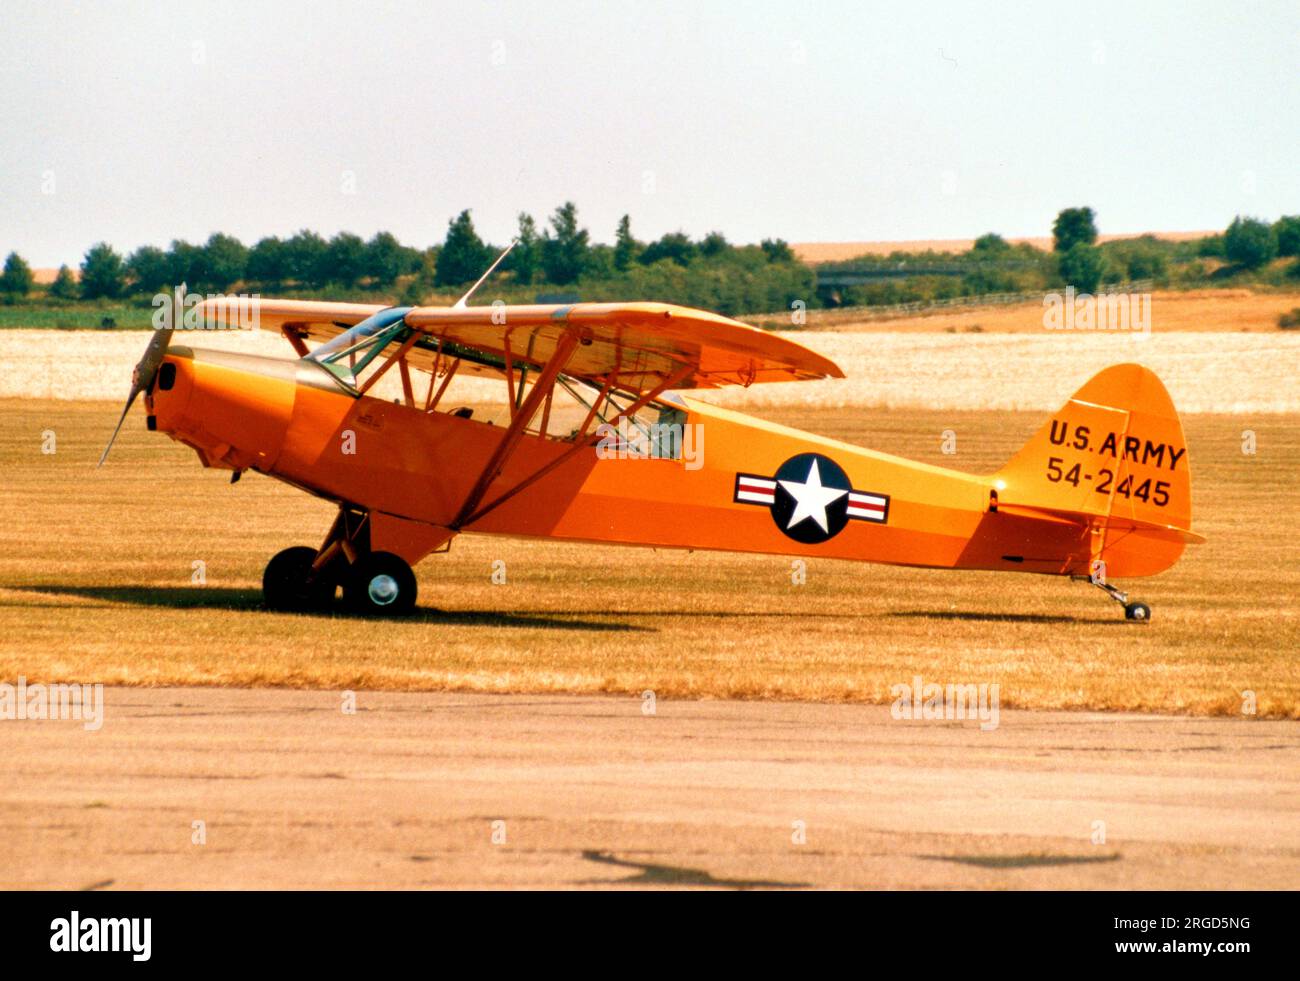 Piper L-21B-135 Super Cub G-OTAN - 54-2445 (msn 18-3845, ex R-155), equipaggiato con l'ingranaggio Whittaker Tandem. Foto Stock